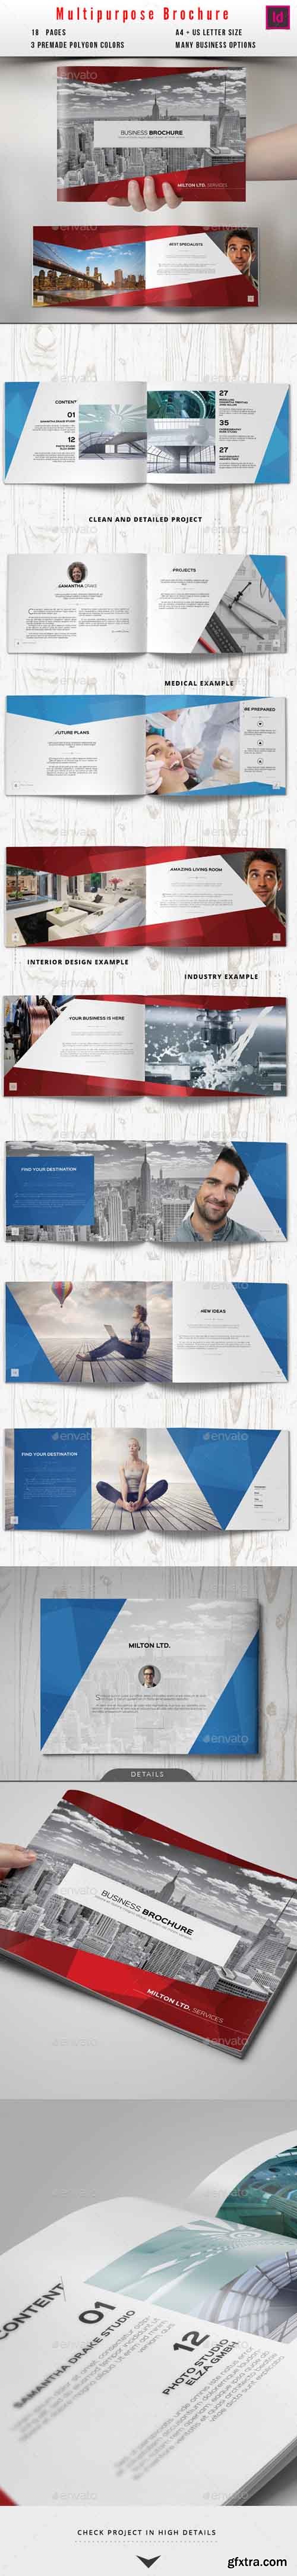 GR - Multipurpose Business Catalog / Brochure 10425787